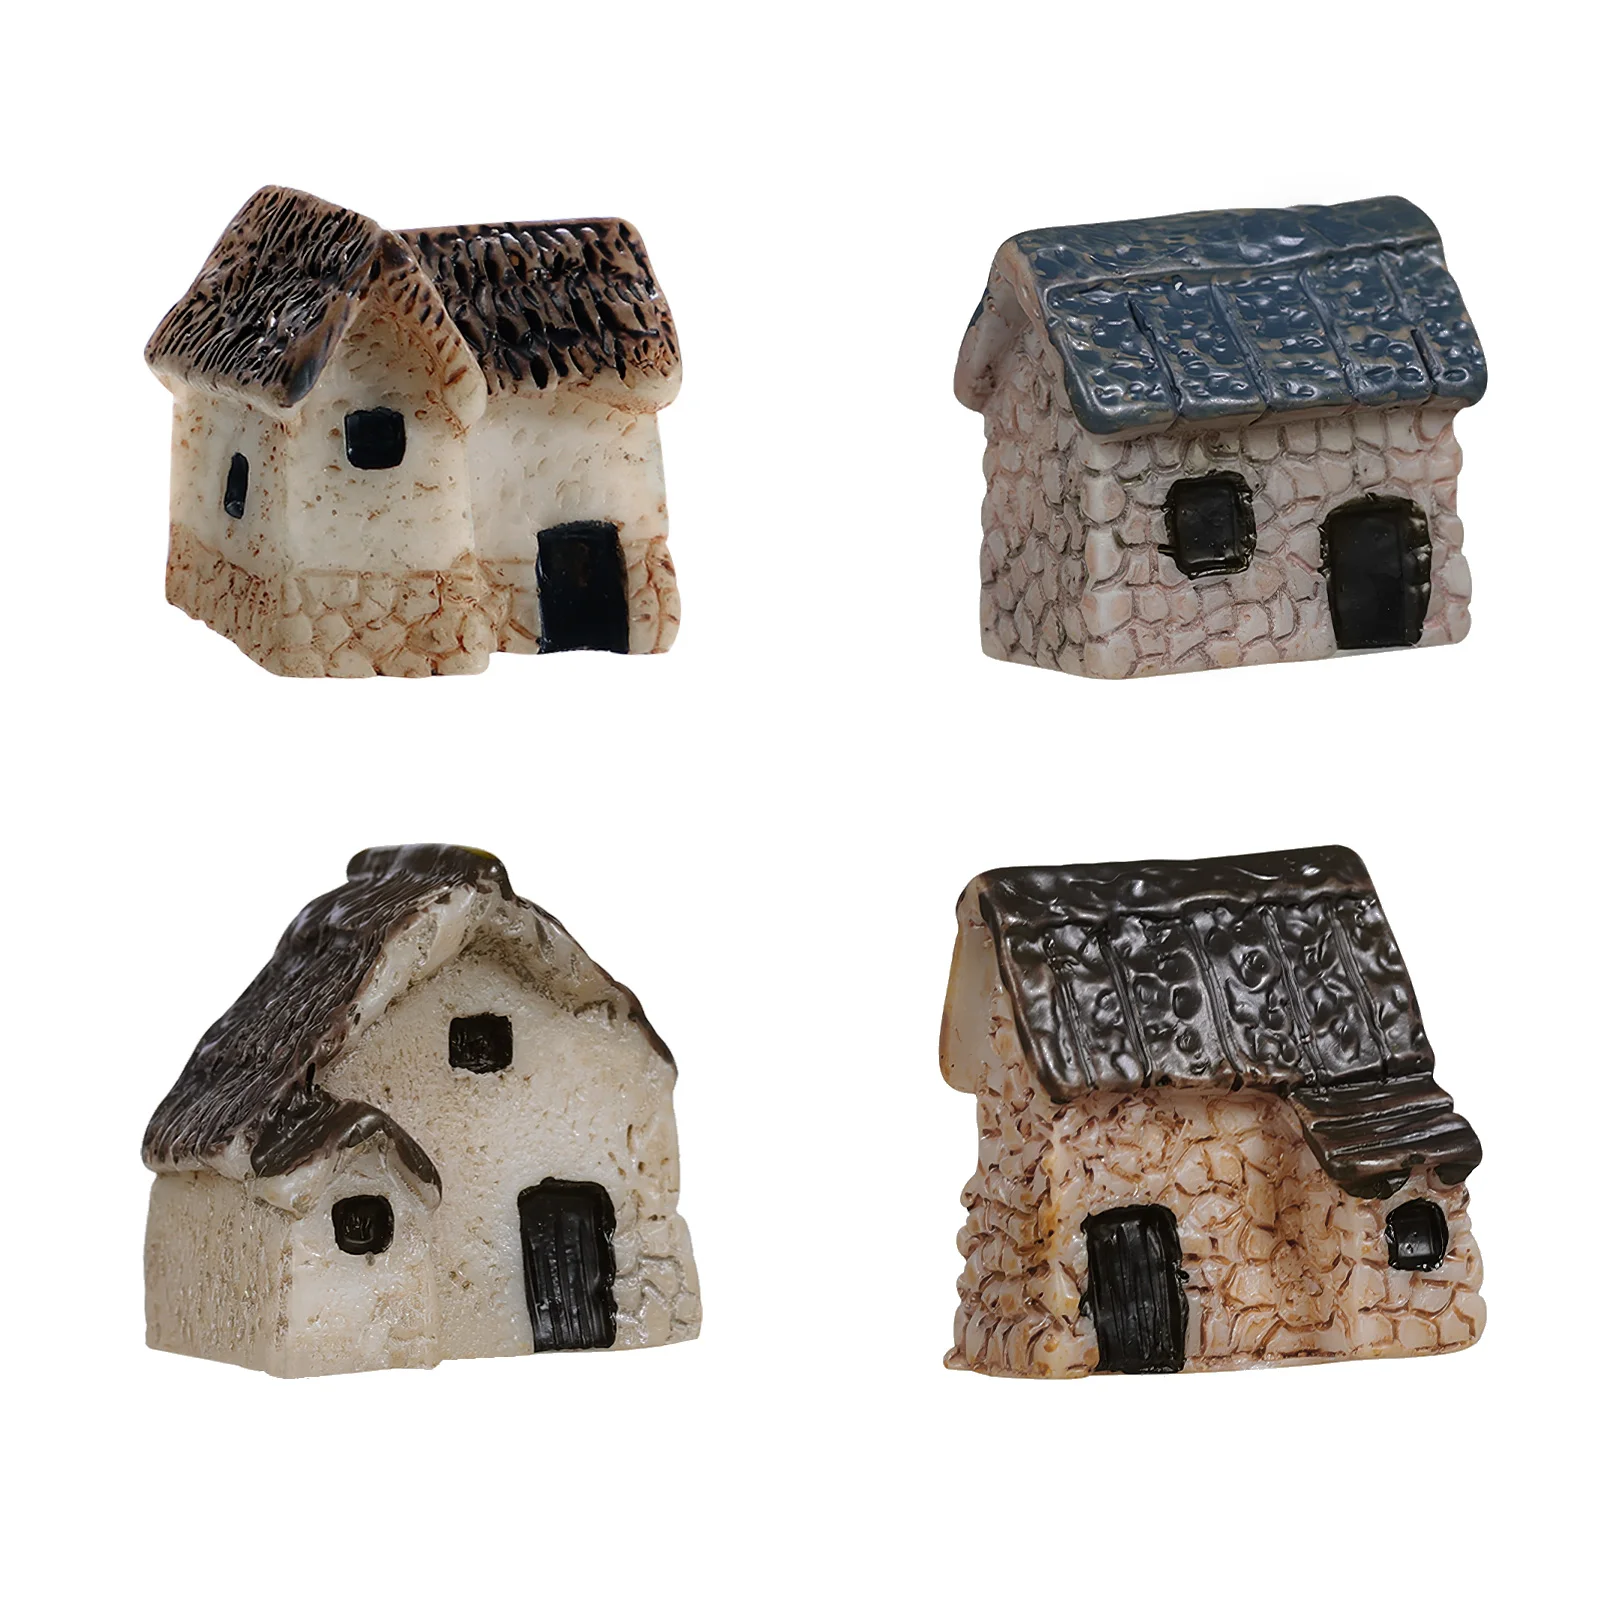 

LIOOBO 4pcs Miniature House Micro Landscape Resin Village House Dollhouse Thatched Cottage Decor Set